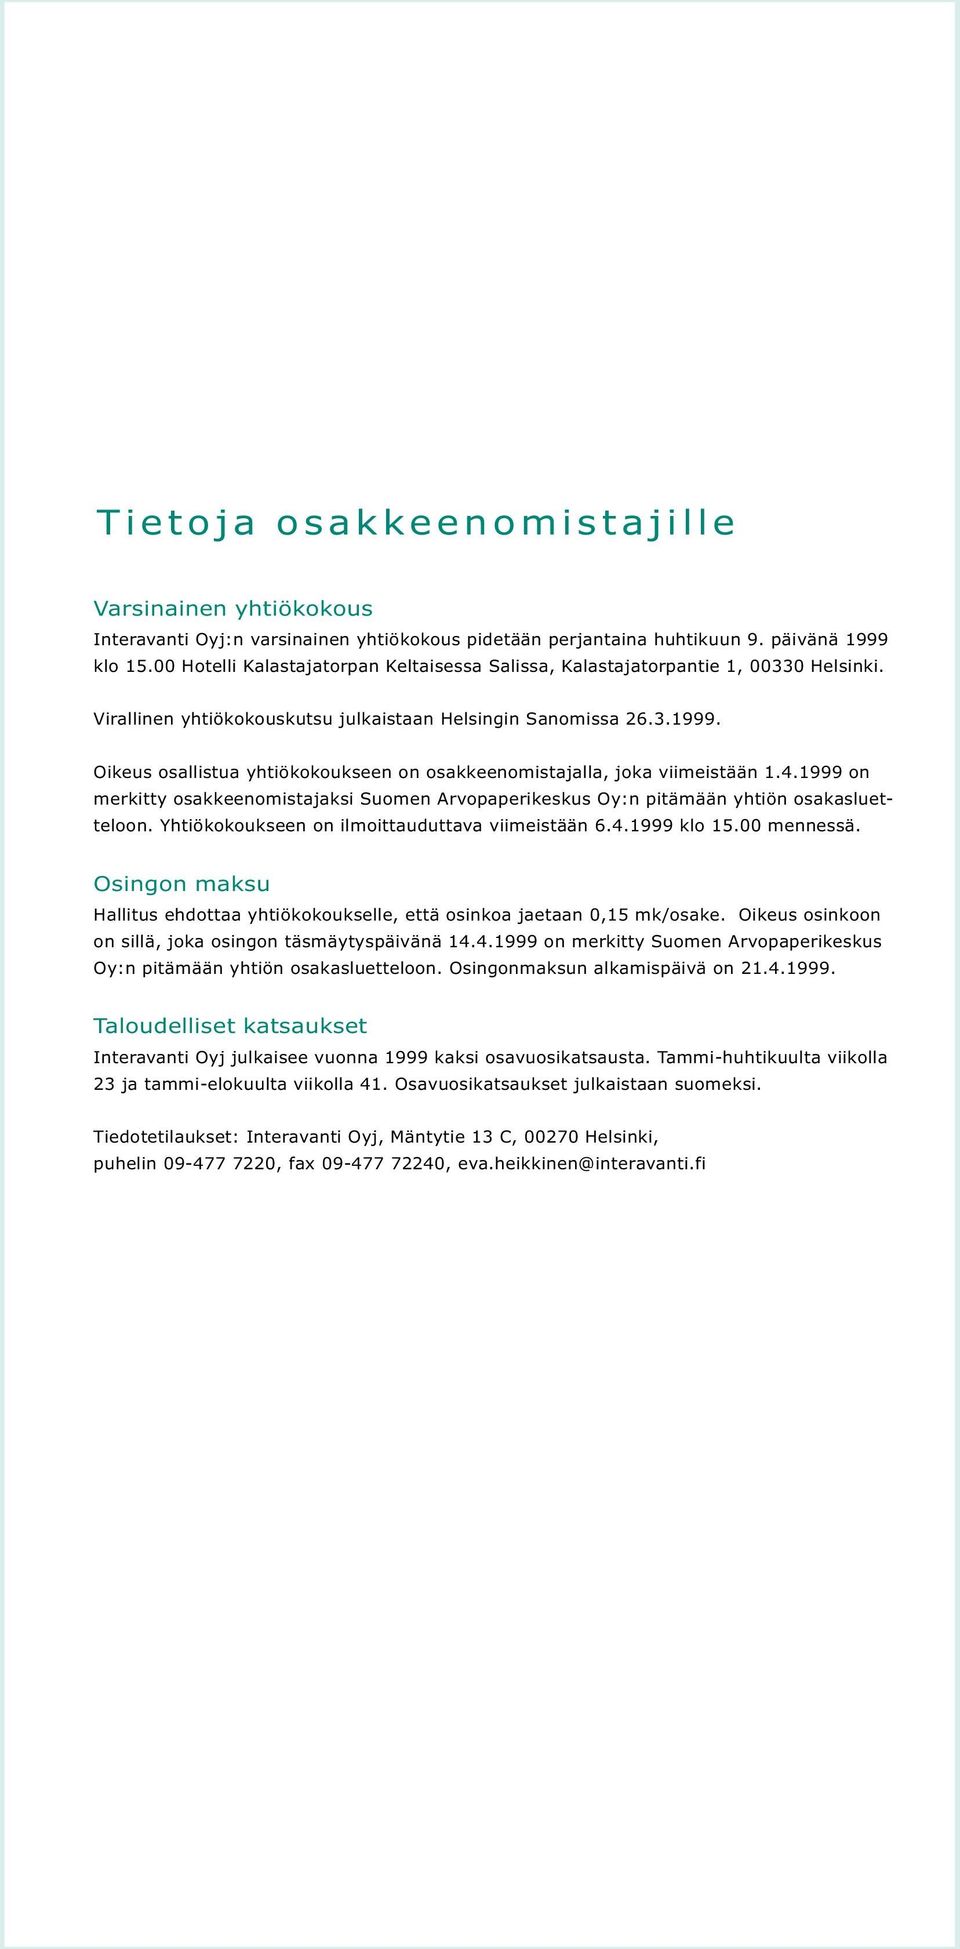 Oikeus osallistua yhtiökokoukseen on osakkeenomistajalla, joka viimeistään 1.4.1999 on merkitty osakkeenomistajaksi Suomen Arvopaperikeskus Oy:n pitämään yhtiön osakasluetteloon.